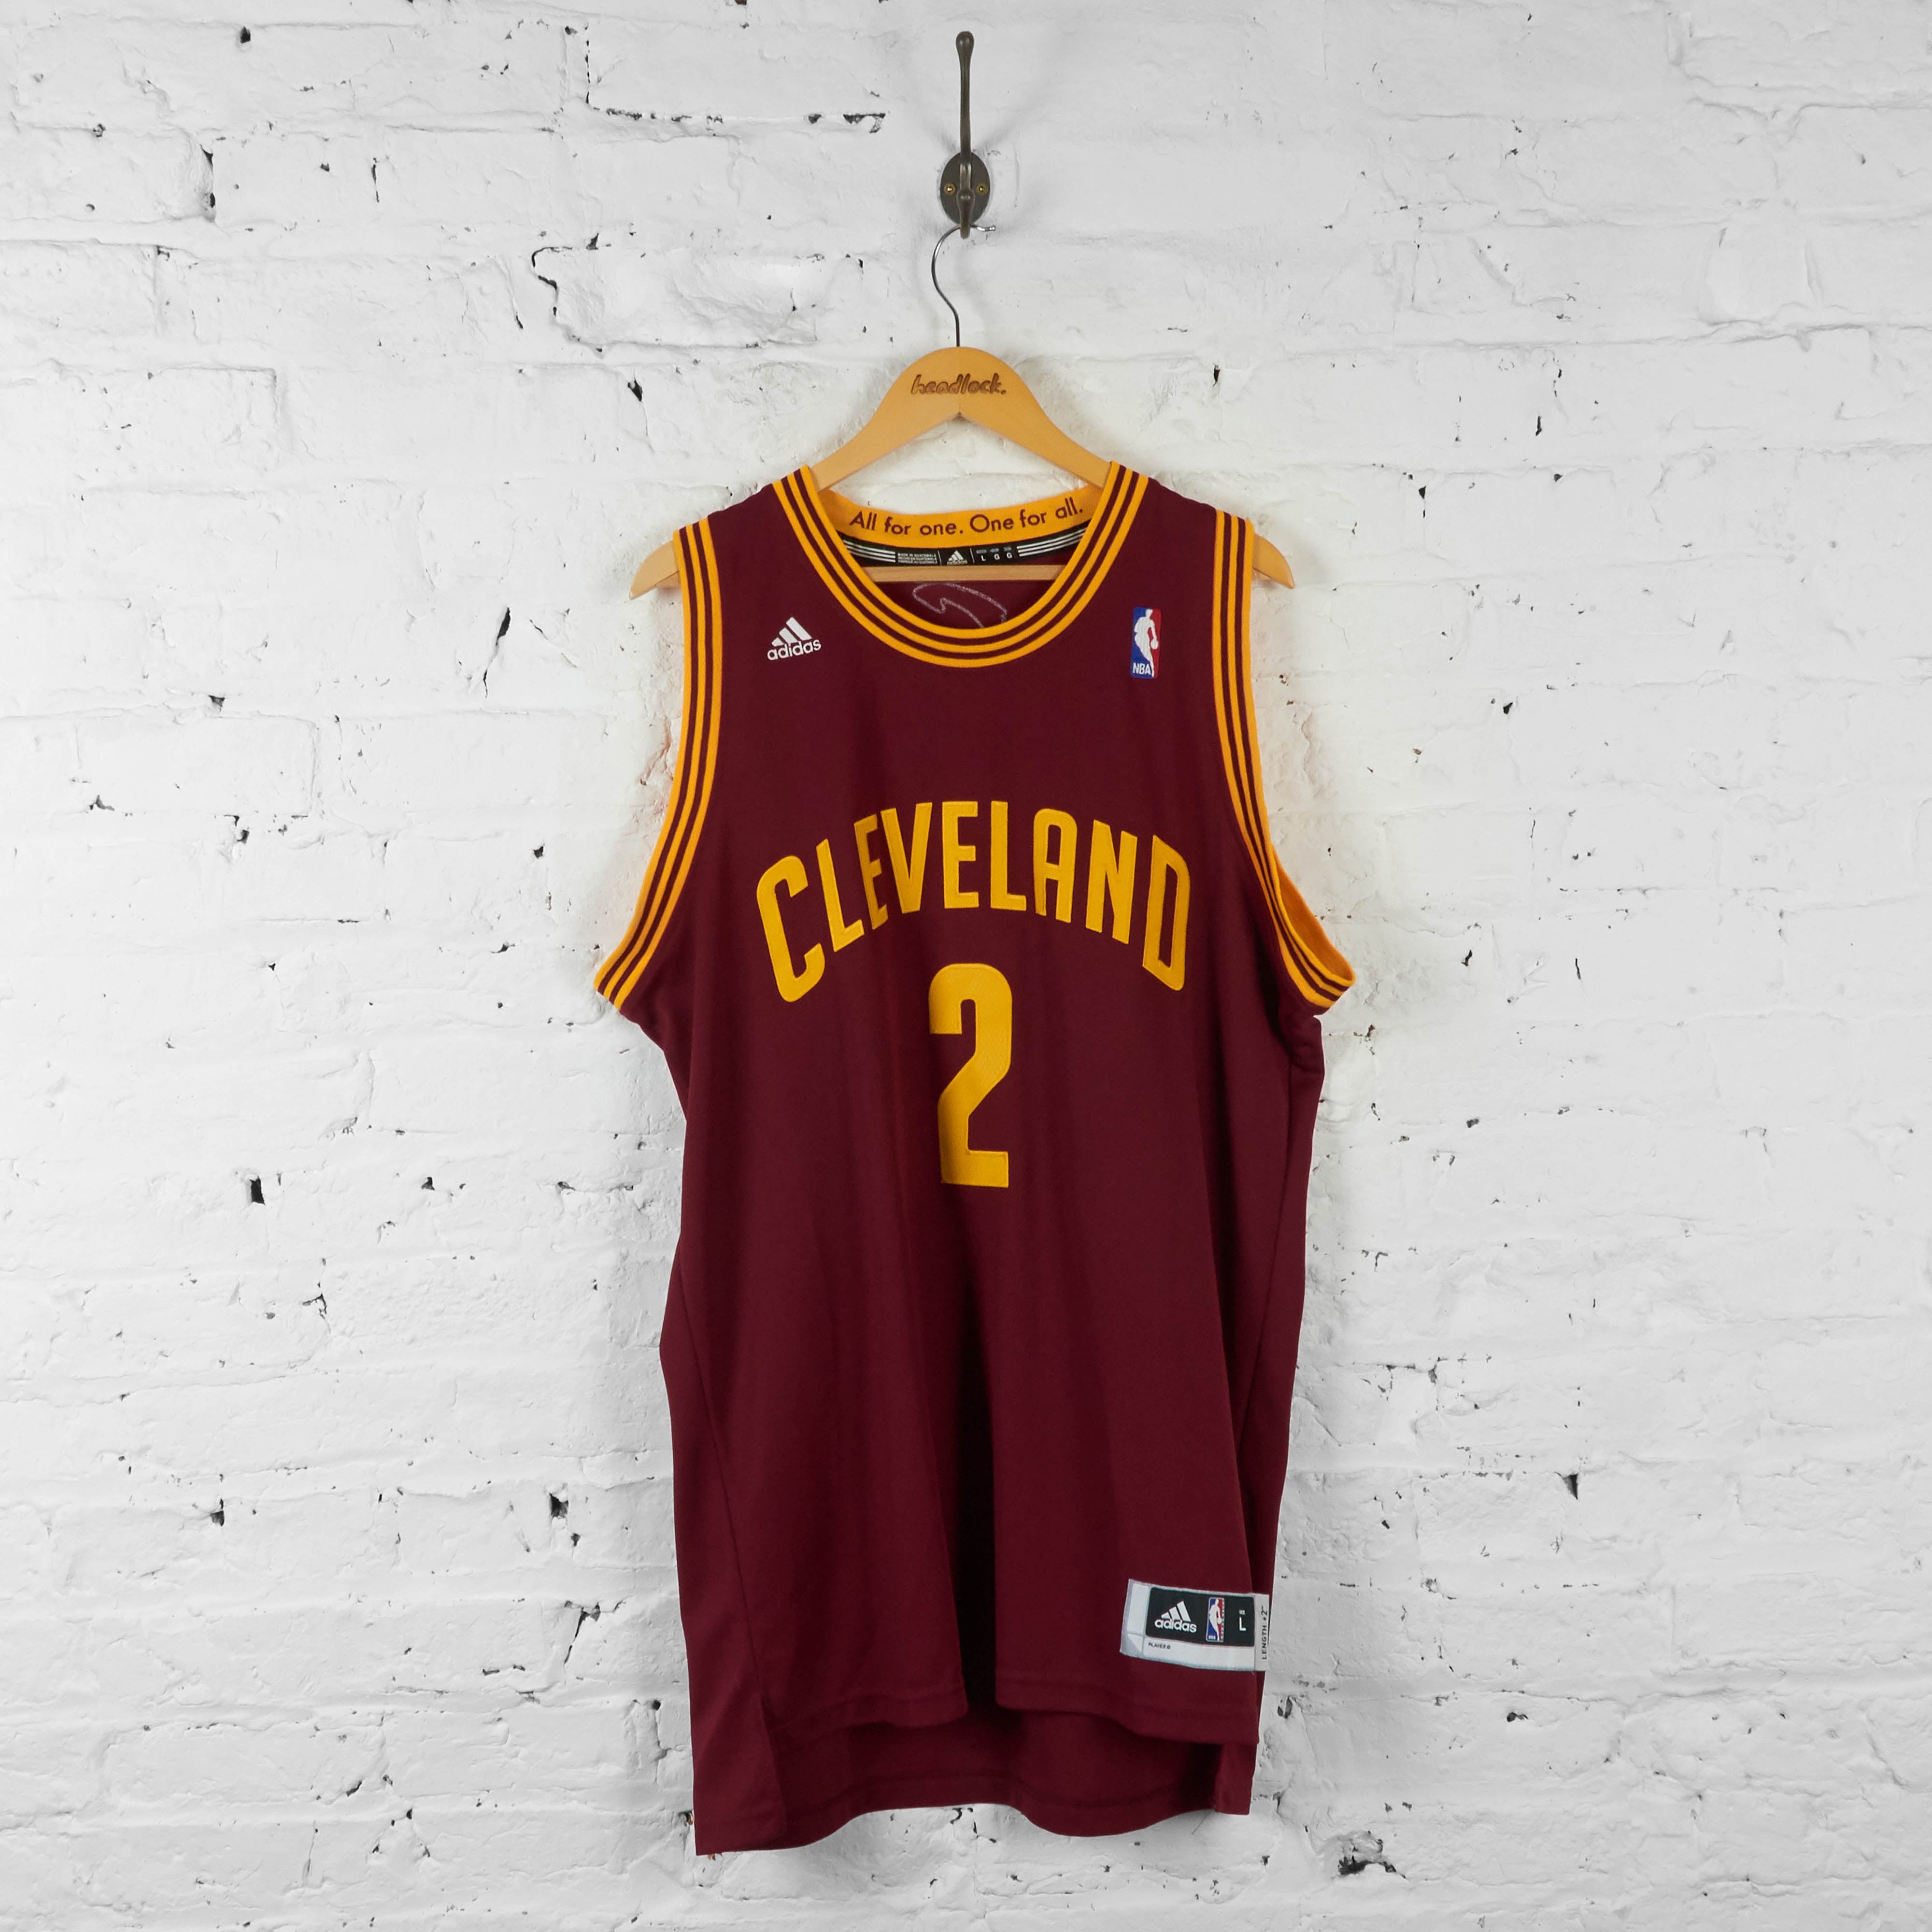 Claveland Cavaliers Basketball Sweatshirt Vintage Adidas NBA 